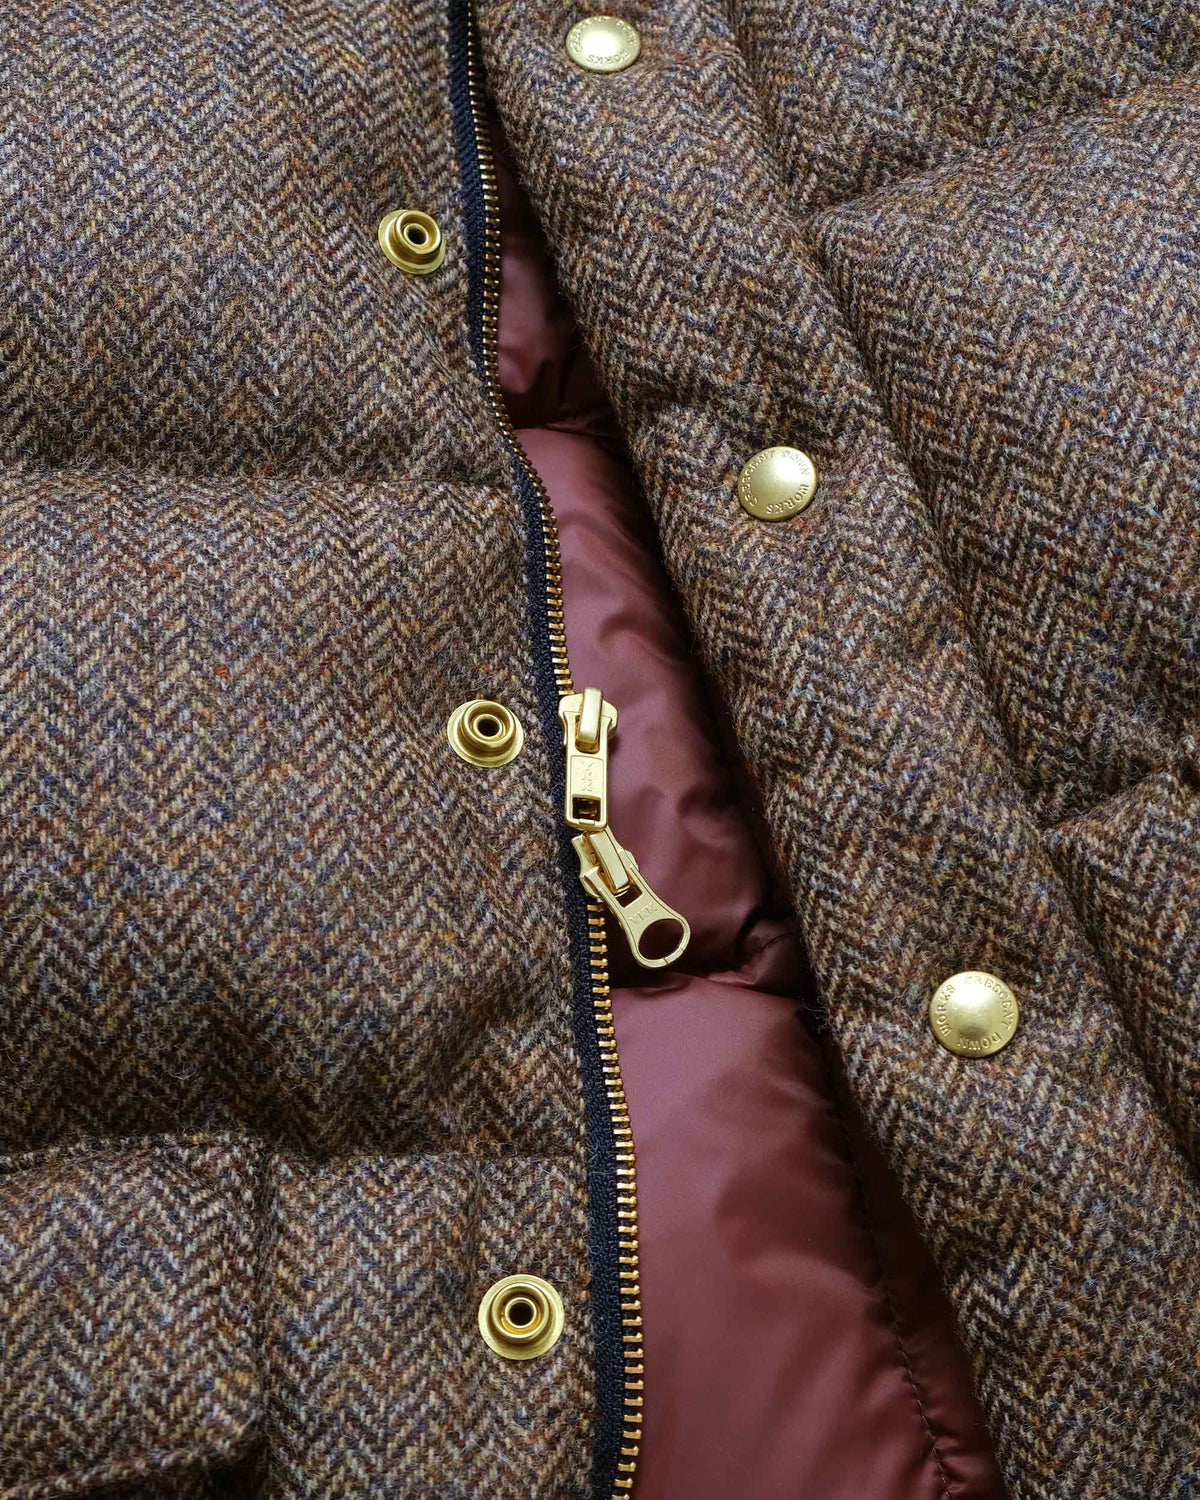 Italian Vest – Quilted Brown Herringbone Wool